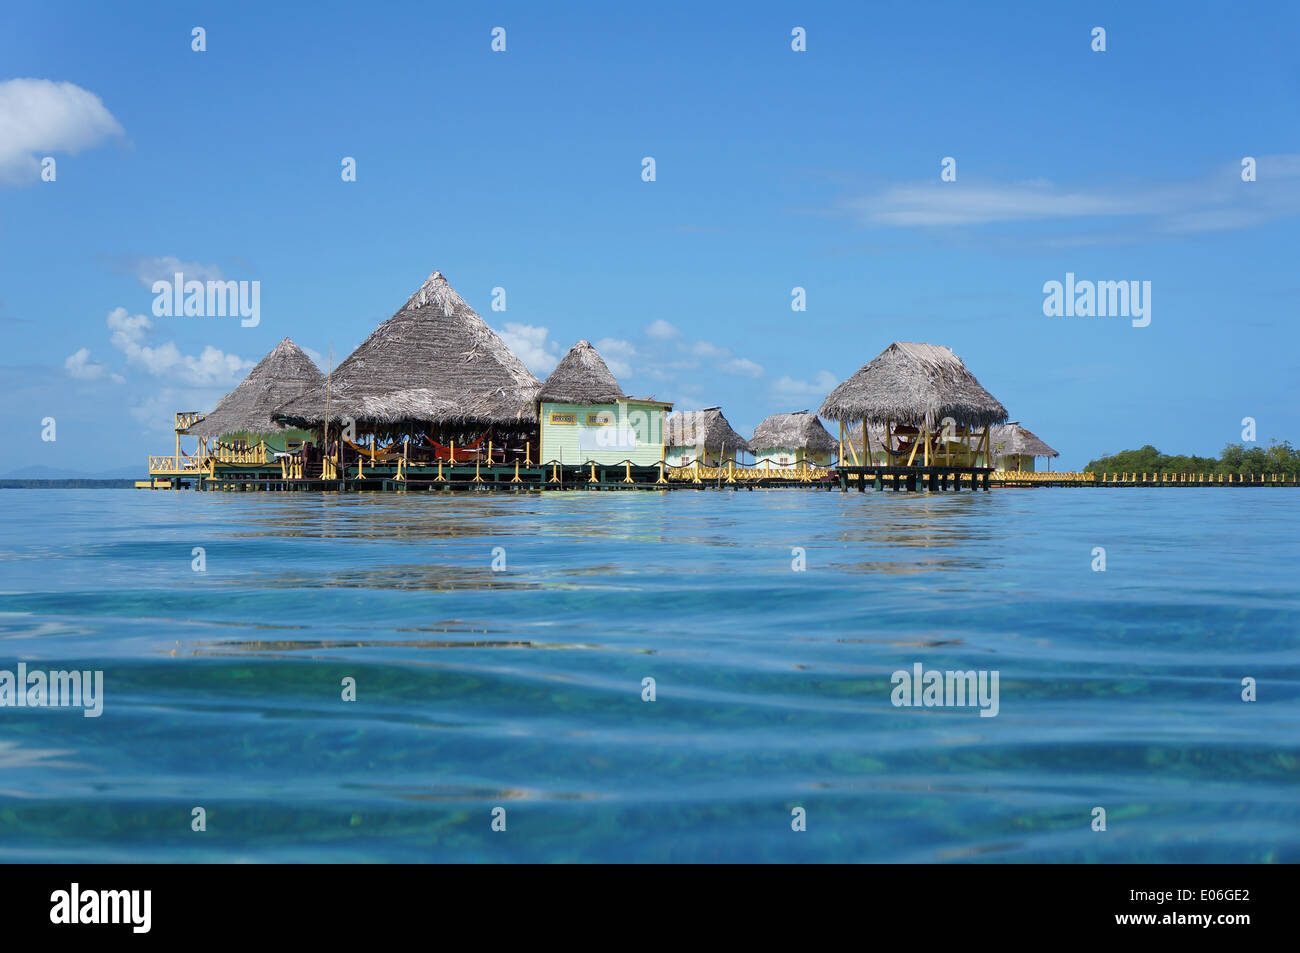 Tropical resort avec toit de chaume sur pilotis vue à partir de la surface de l'eau, l'île de Colon, la mer des Caraïbes, le Panama Banque D'Images